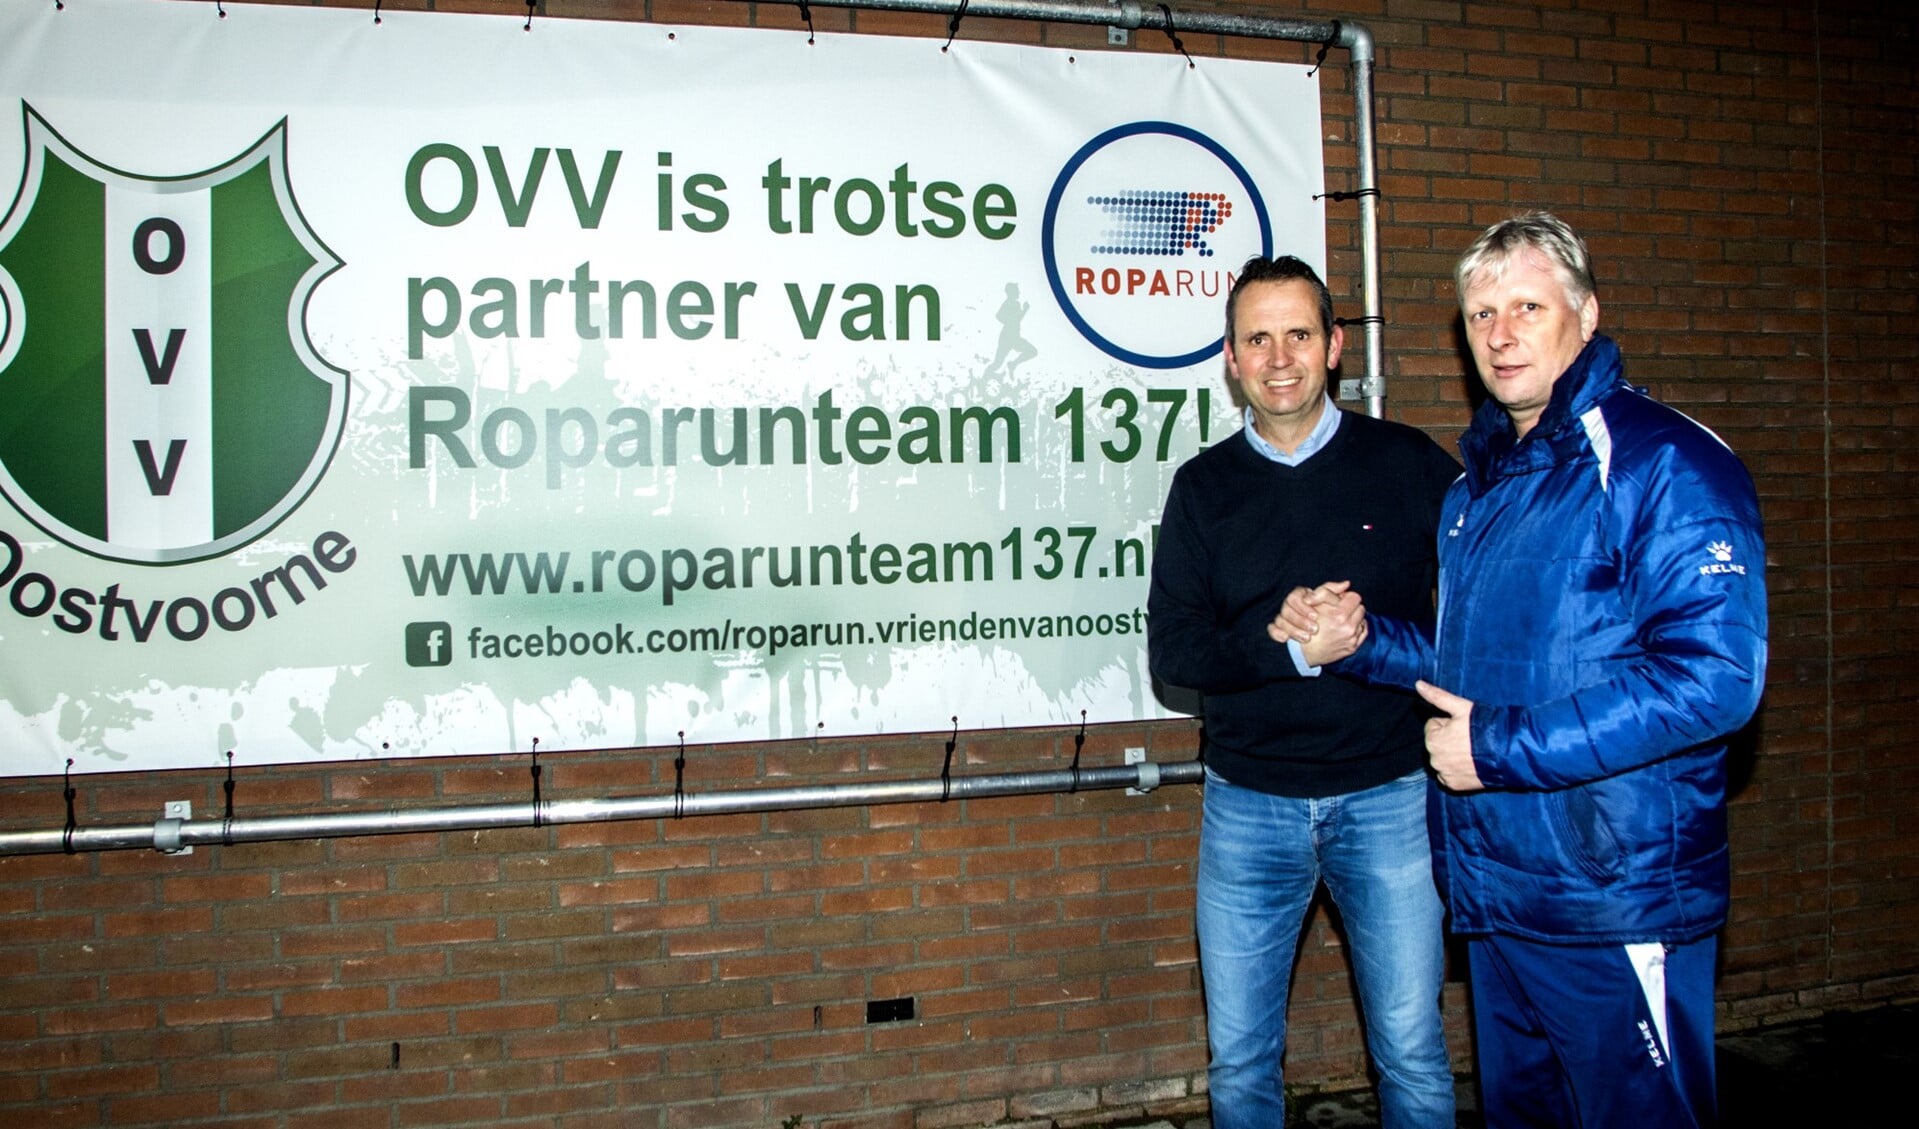 Dennis van Oudenaarden van Roparunteam 137 en Martin Hagers van OVV slaan komende zaterdag de handen ineen voor het goede doel: kankerbestrijding. * Foto: Wil van Balen.